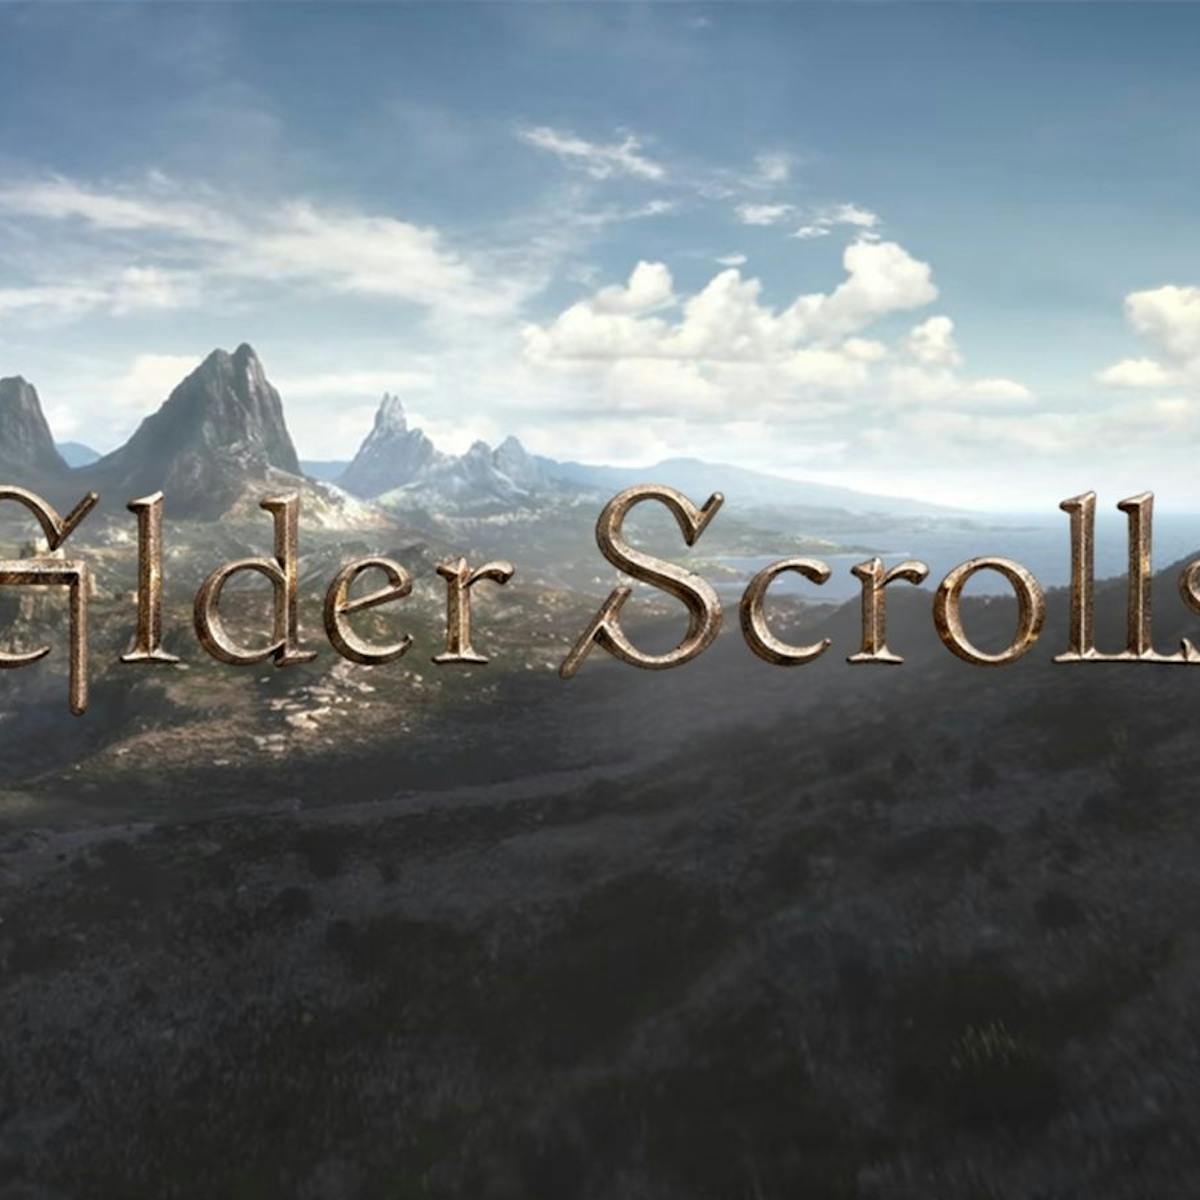 elder scrolls online guide 2016